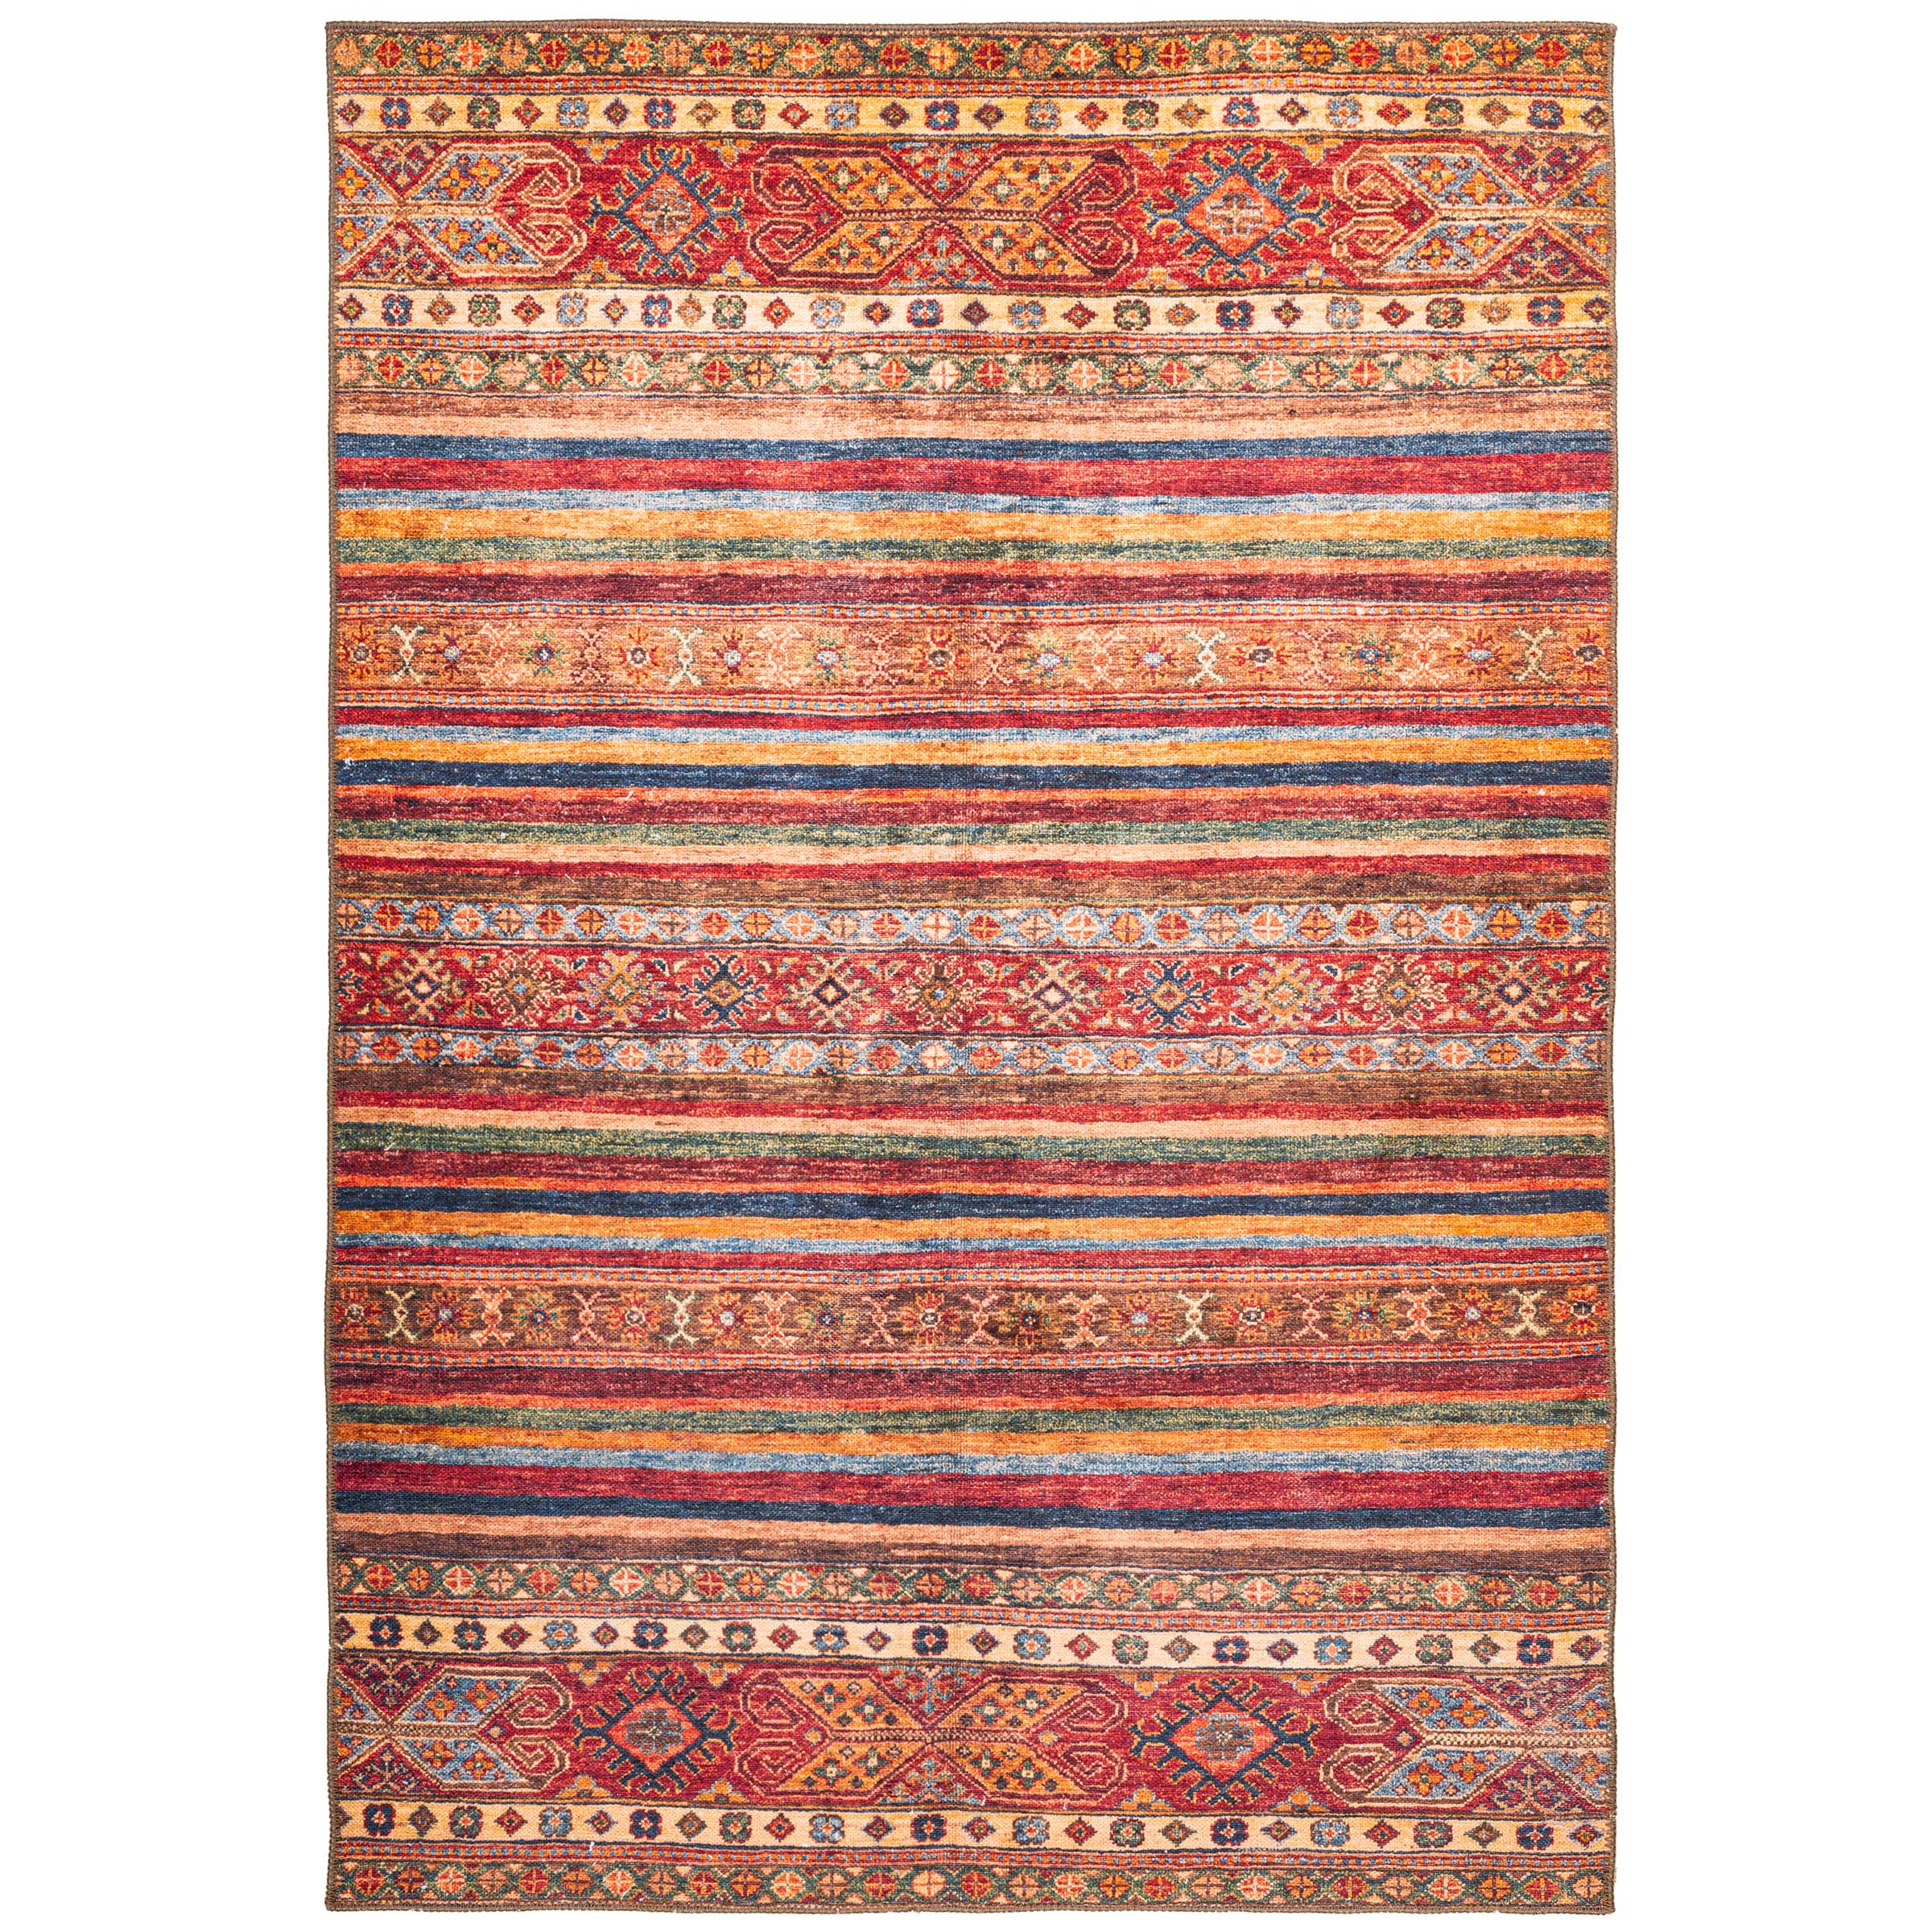 Joseph Banks Gorgelen Verschrikkelijk Kleurrijk Perzisch tapijt kopen? | Vloerkleden | kameraankleden.nl